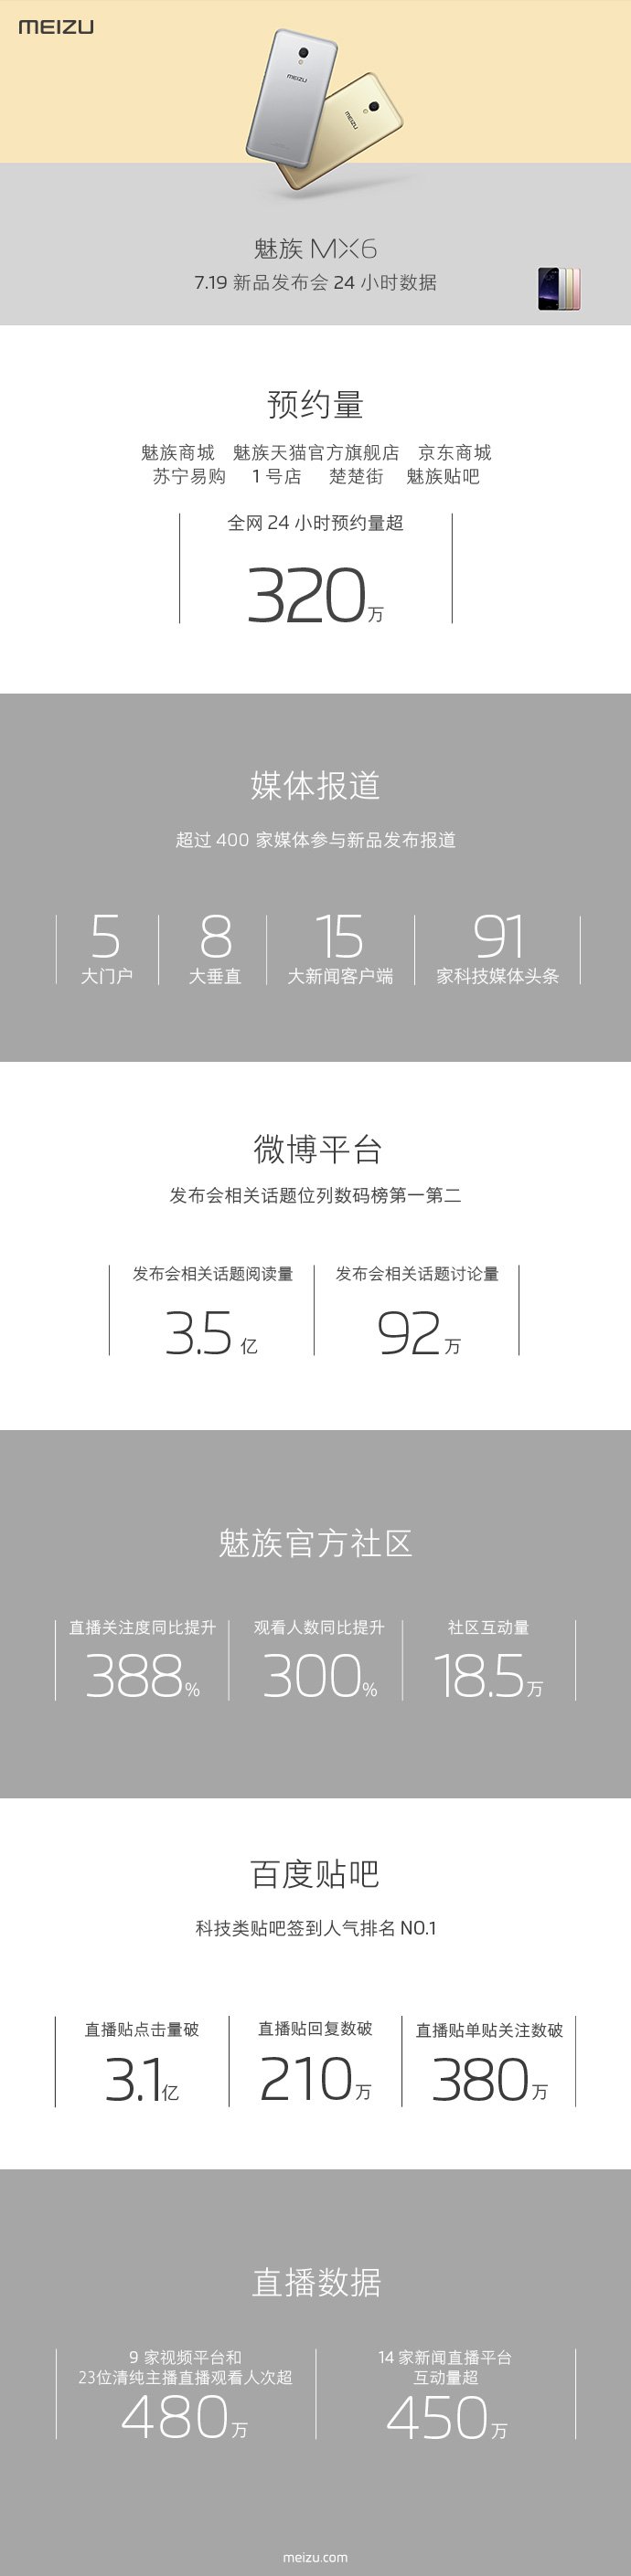 Meizu MX6 3.2m registrations